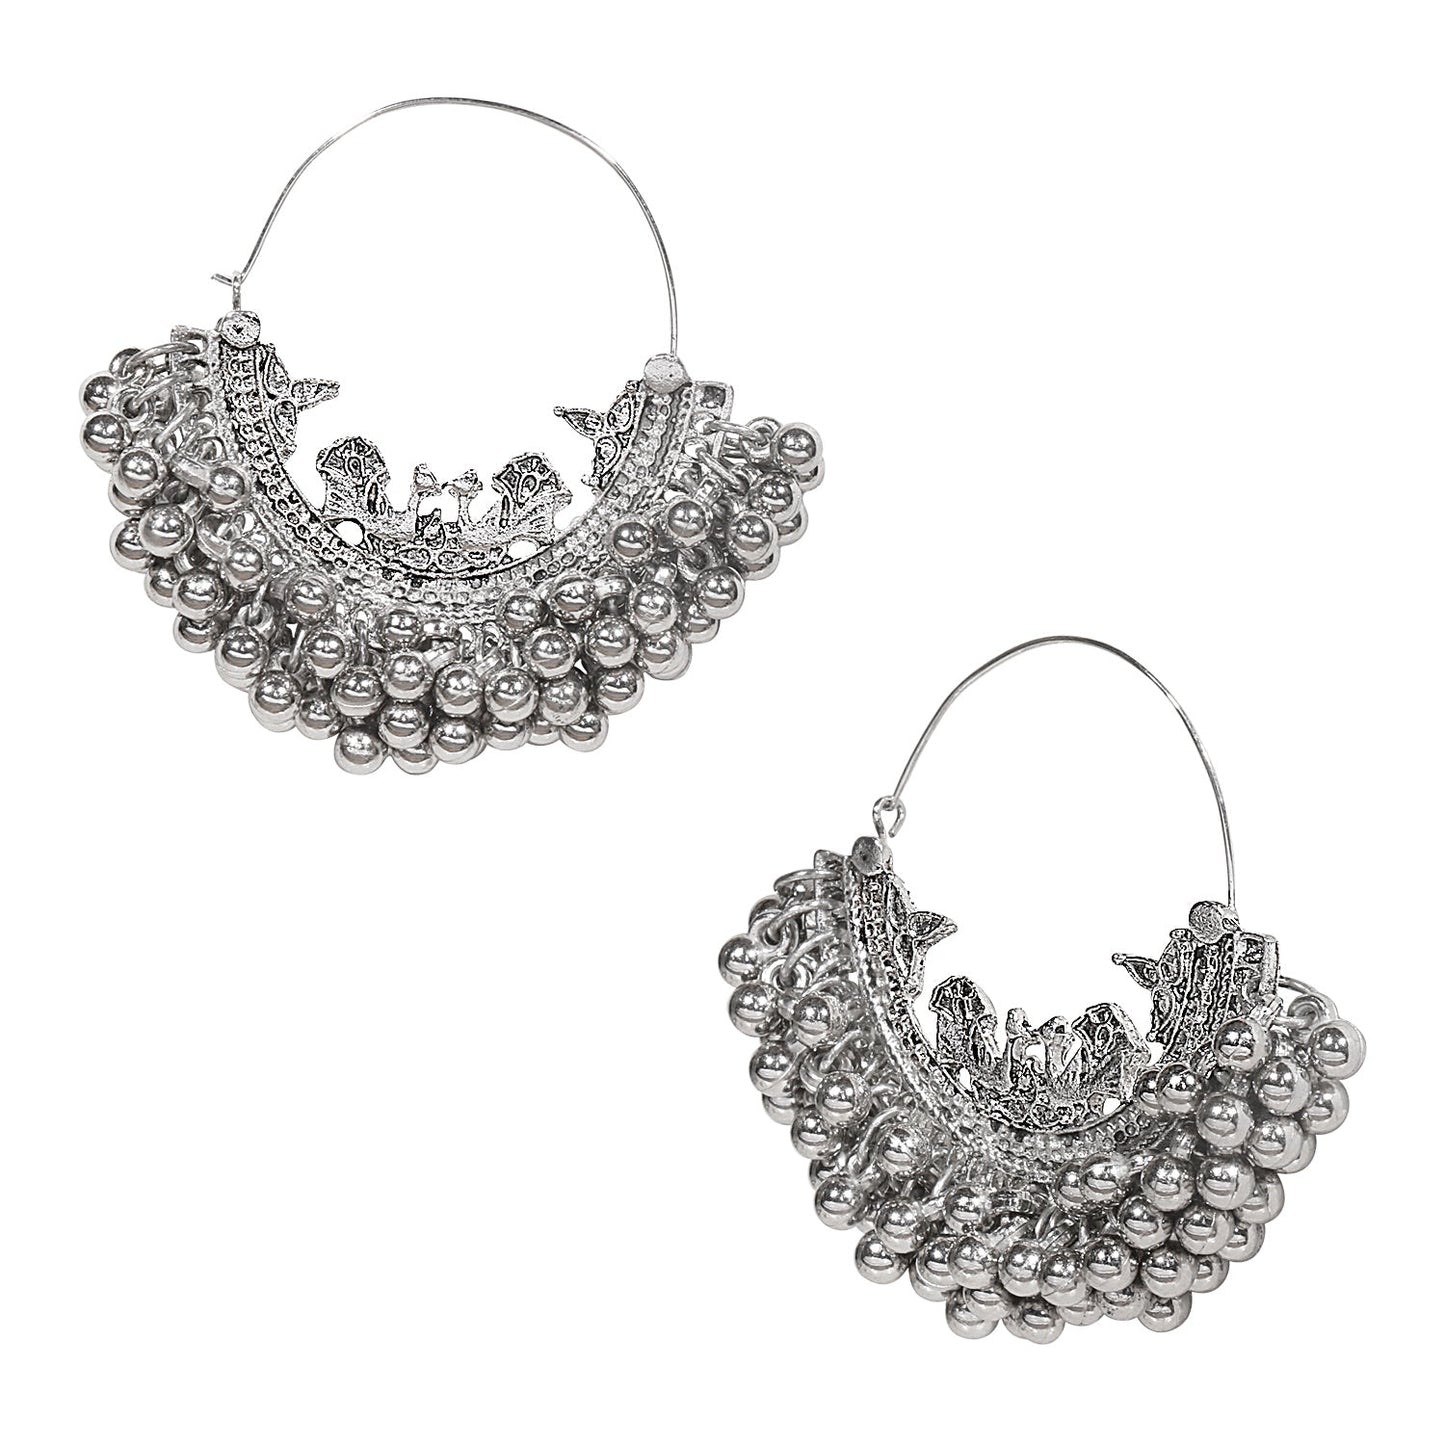 Shining Jewel Real Authentic Silver Look Hoop / Chandbali Earrings For Women & Girls (SJ_1852)